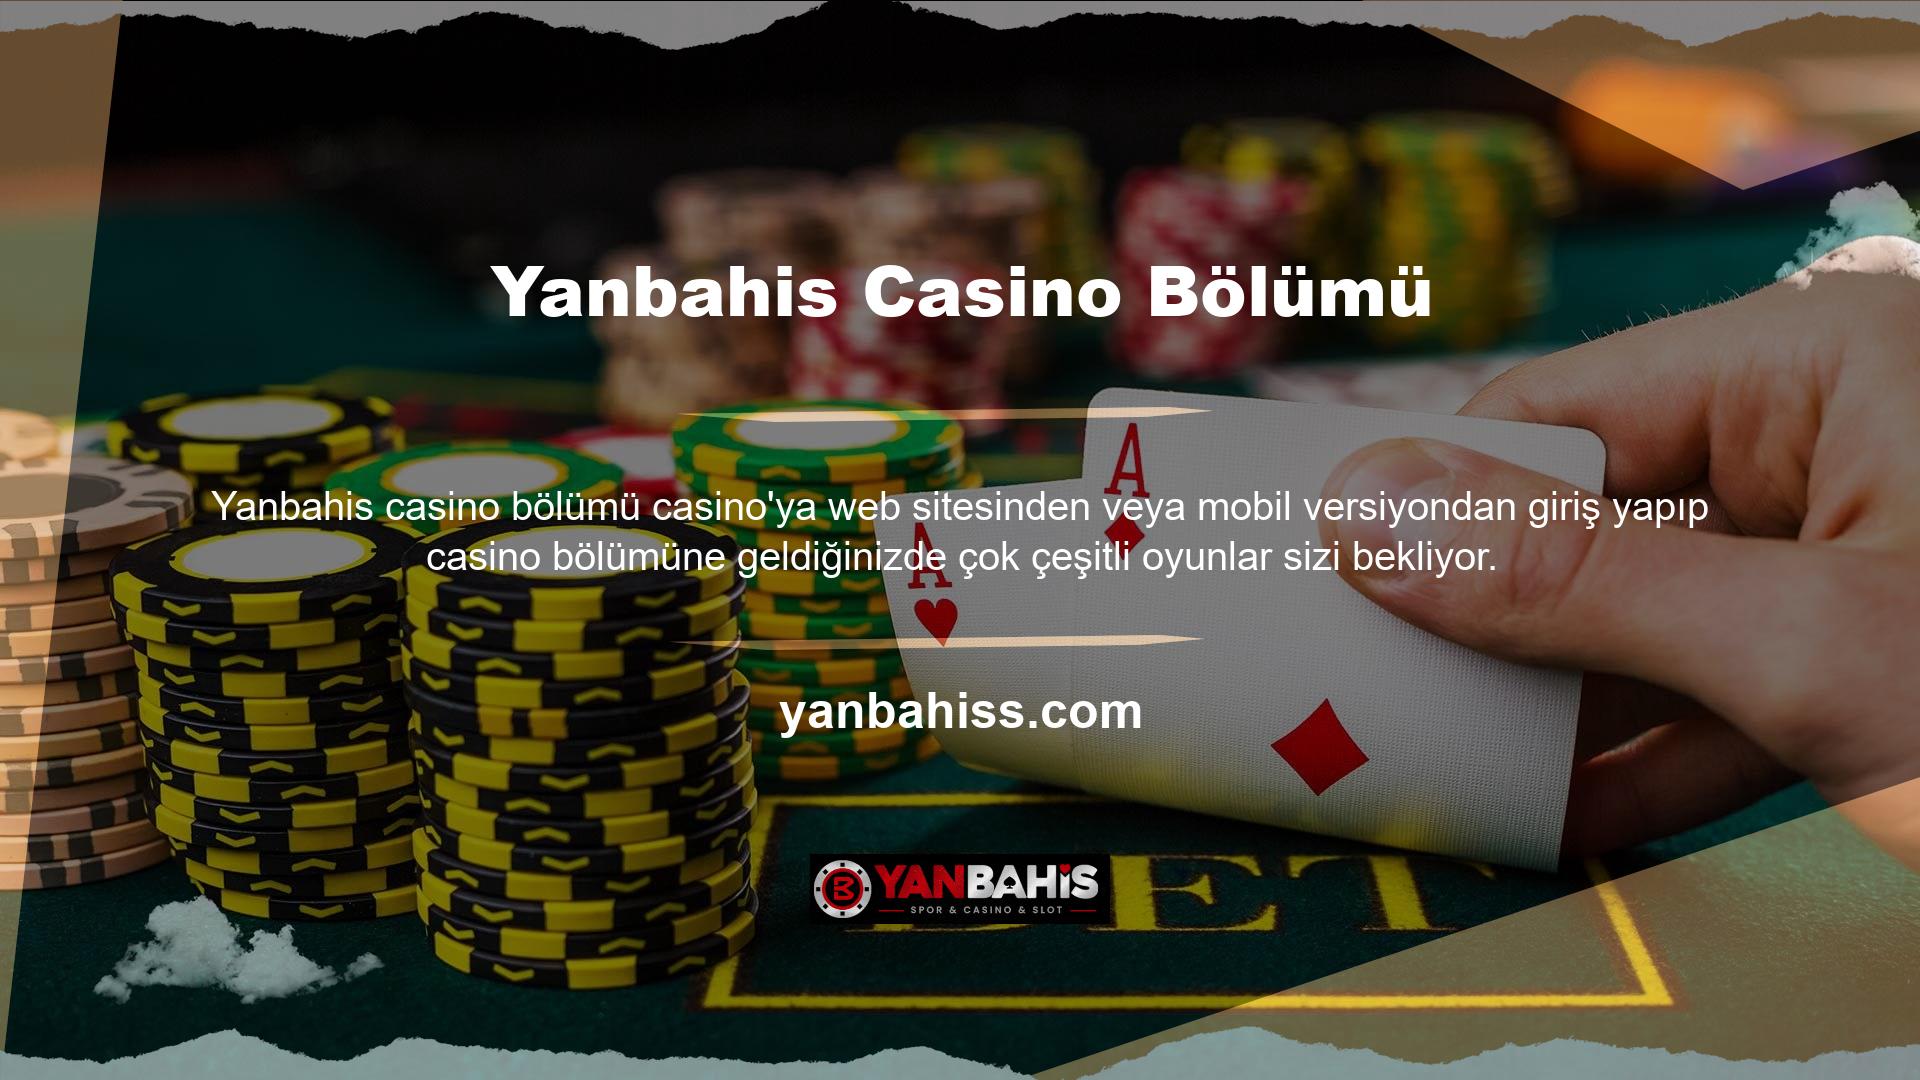 Her durumda, Türk yargı yetkisi altındaki yasa dışı casino sitelerini kullanmak kesinlikle hukuki ihtilaflara yol açacaktır